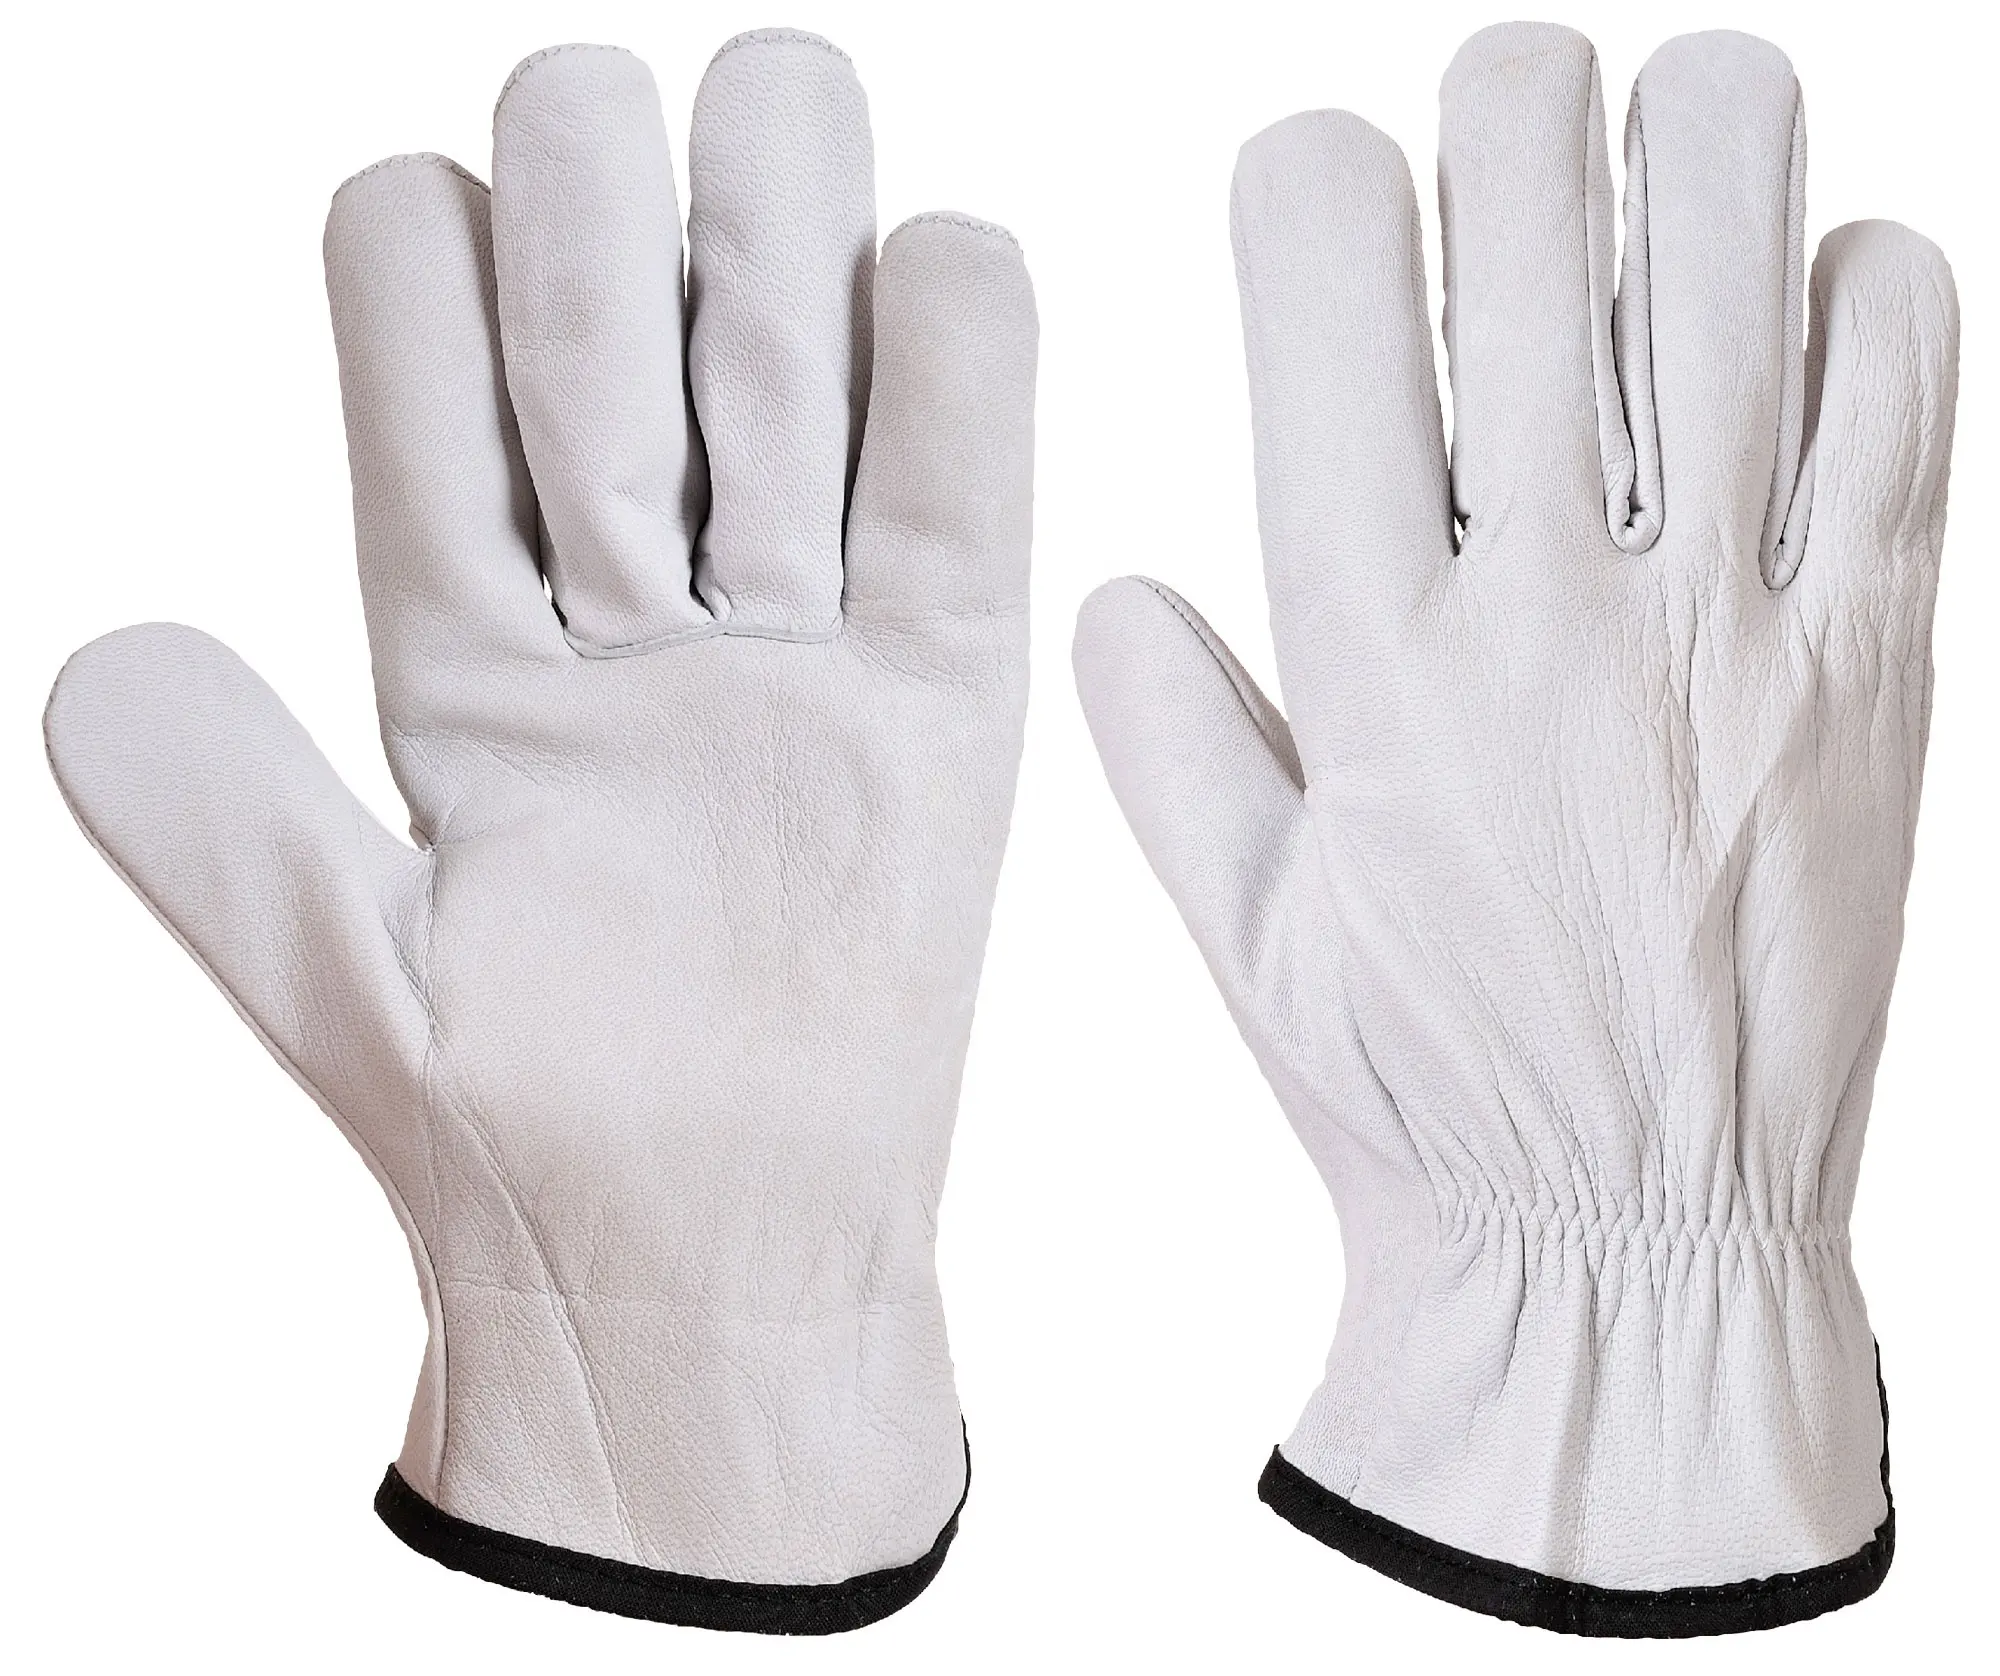 Swelder 2022 fabrika ucuz 10 inç beyaz renk koyun deri iş eldivenleri çizgisiz yumuşak ve rahat